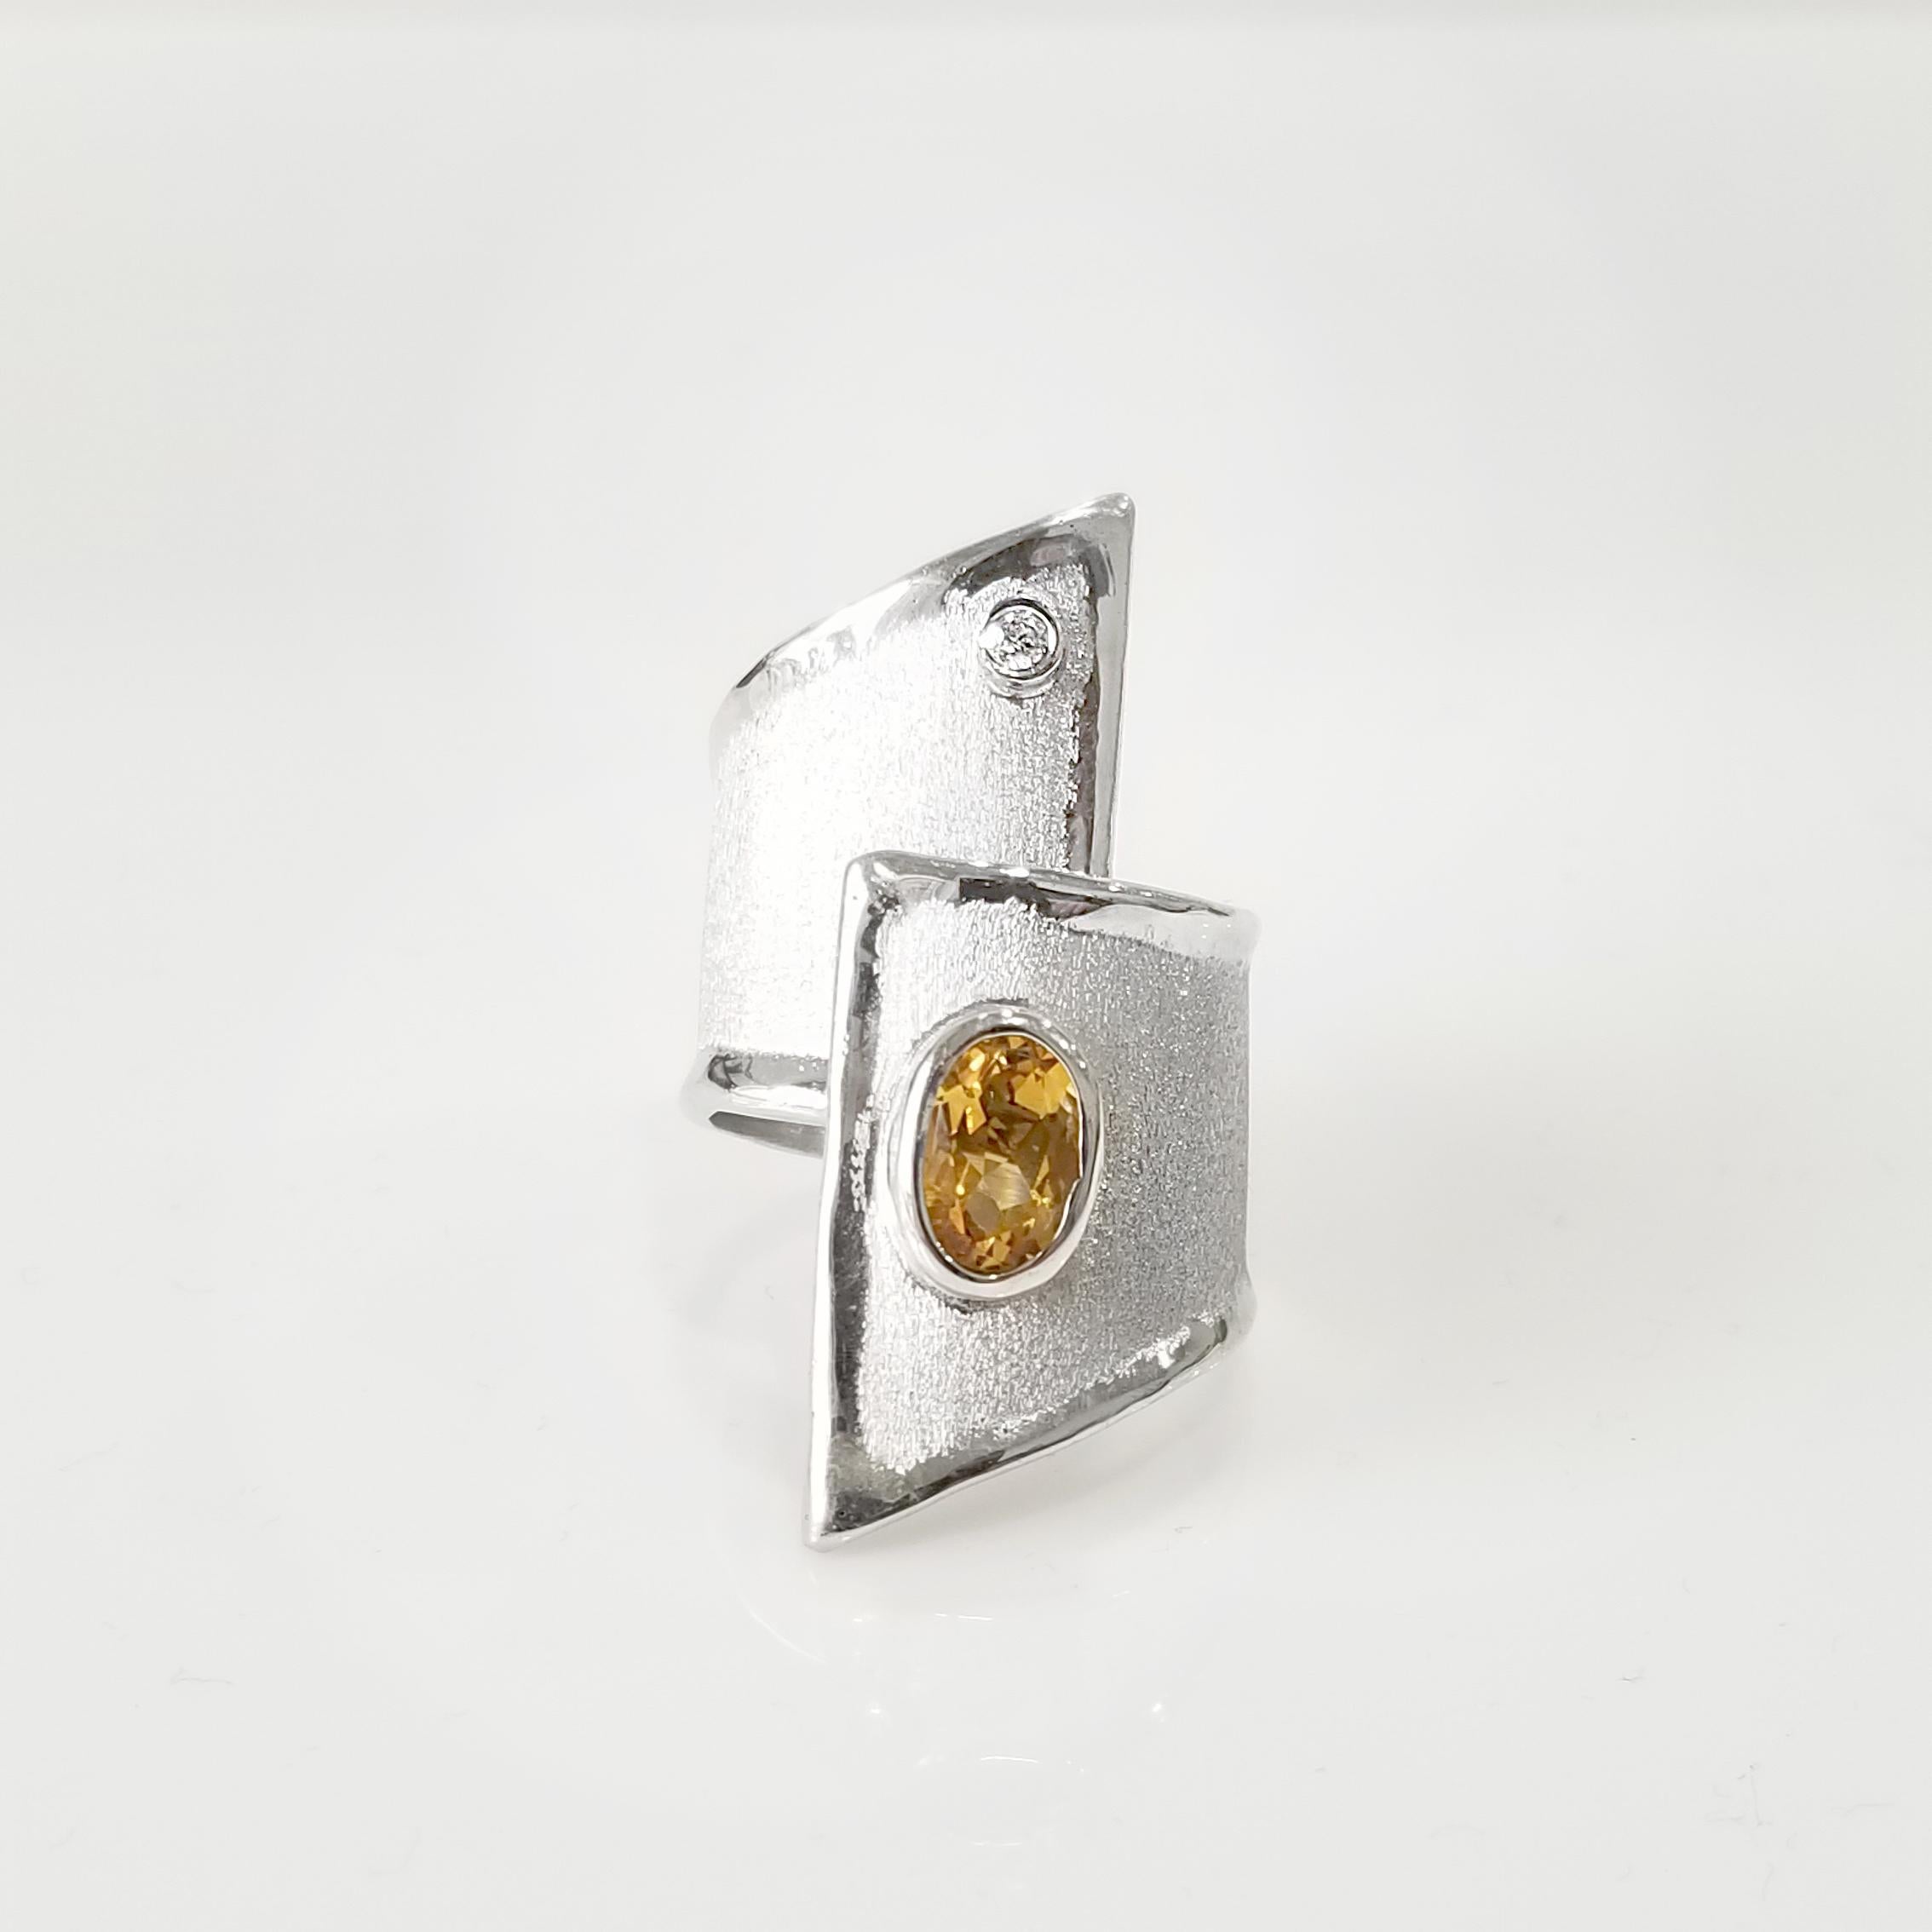 Yianni Creations Ammos Collection 100% Handmade Artisan Ring aus Feinsilber, mit Palladium beschichtet, um das Juwel vor den Elementen zu schützen. Der Ring ist mit 1,25 Karat Citrin im Ovalschliff und 0,03 Karat weißen Diamanten im Brillantschliff